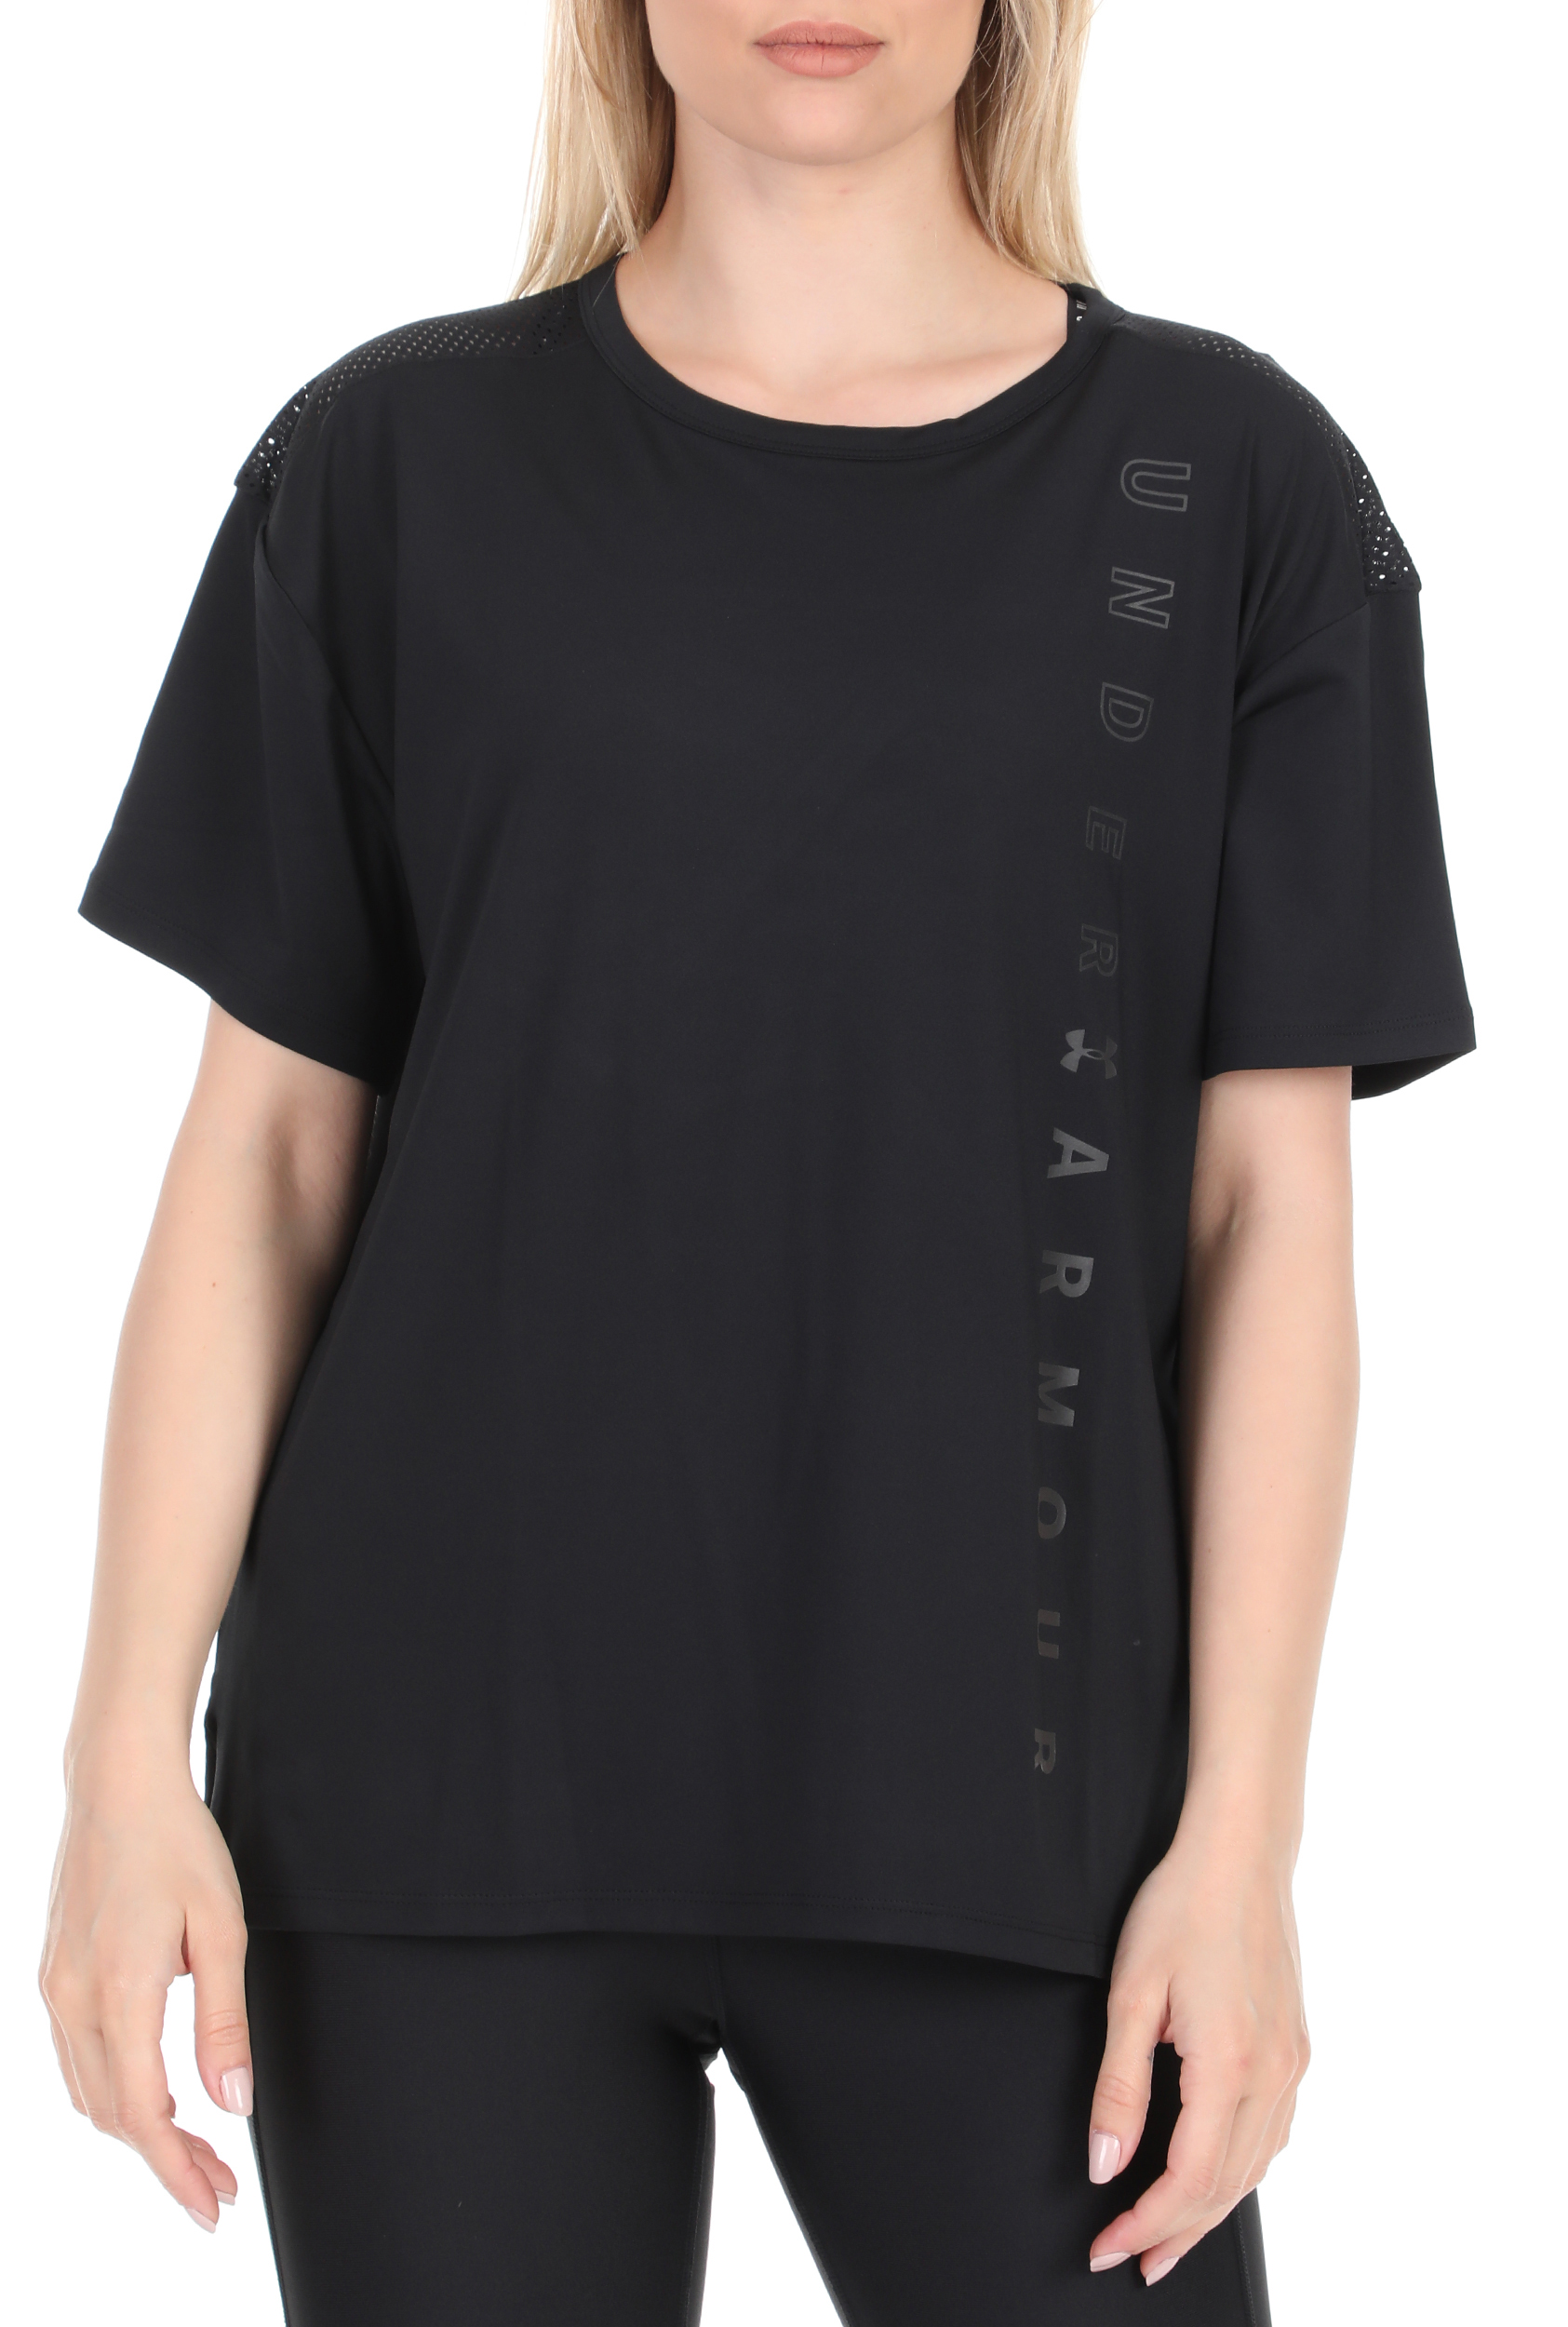 Γυναικεία/Ρούχα/Αθλητικά/T-shirt-Τοπ UNDER ARMOUR - Γυναικεία μπλούζα UNDER ARMOUR μαύρη